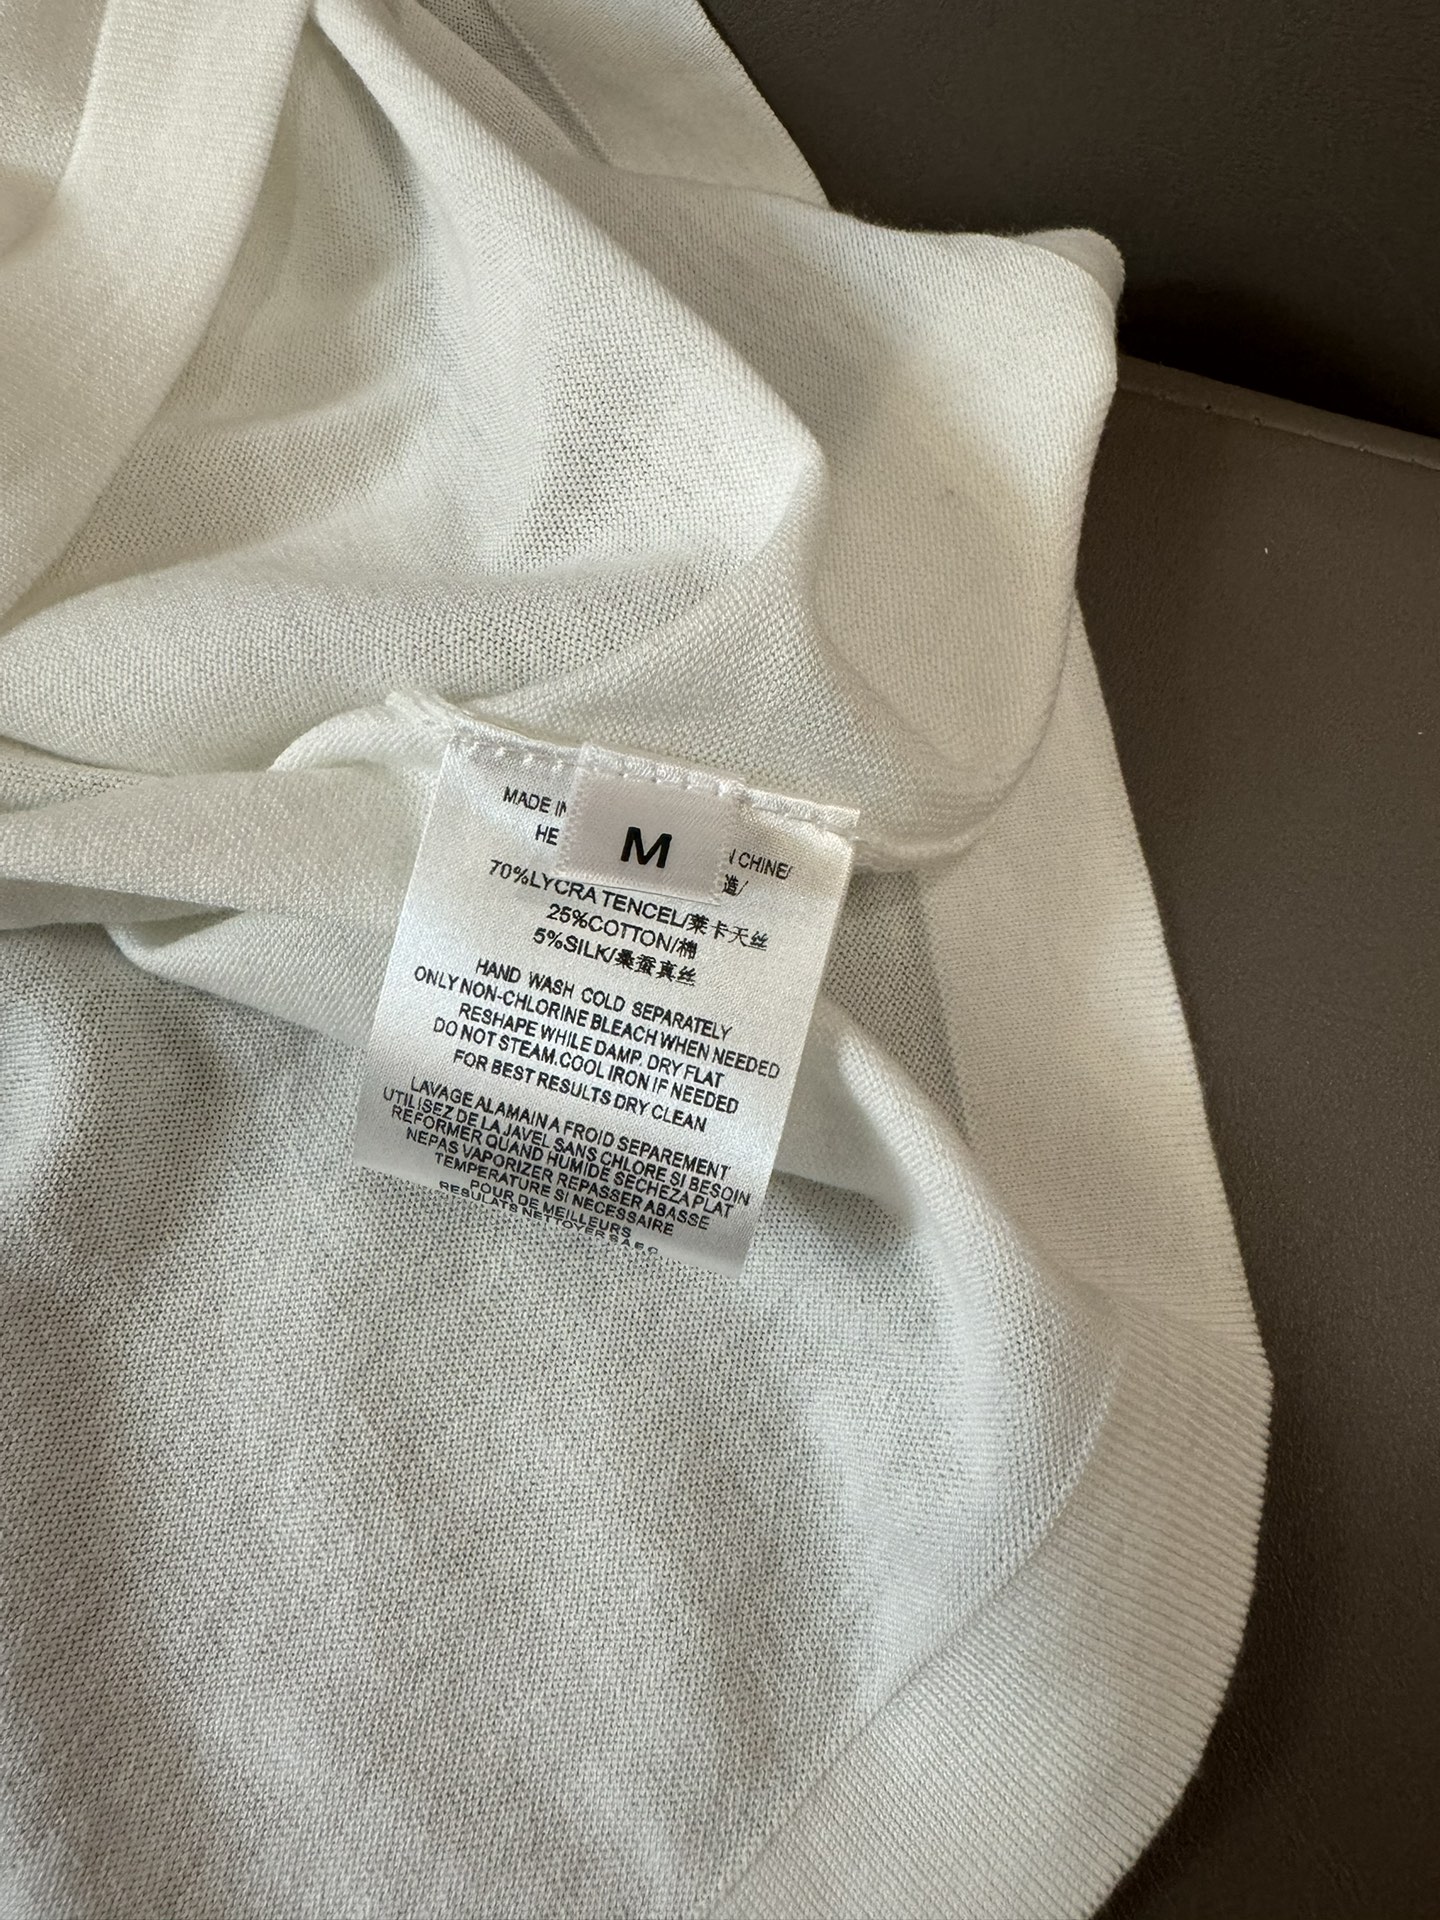 FBC007#新款套装BC棒球服系列天丝短袖针织上衣天丝针织短裤套装白色蓝色浅灰色SML